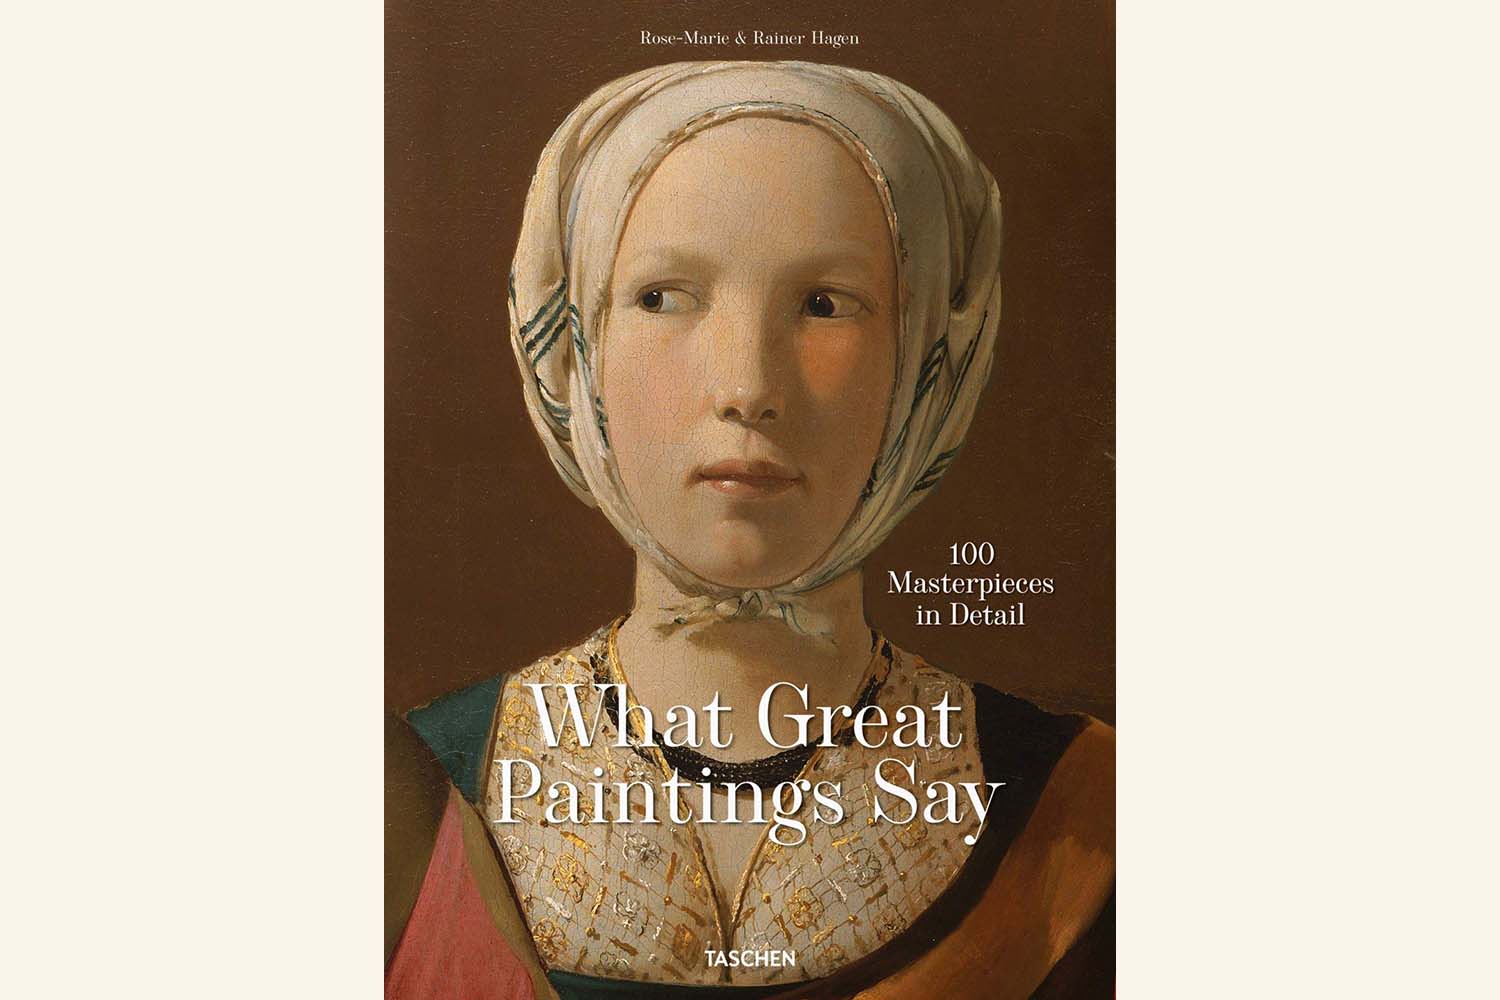 每一个艺术爱好者都应该读的最好的艺术史书籍:伟大的绘画说什么，作者Rose-Marie和Rainer Hagen